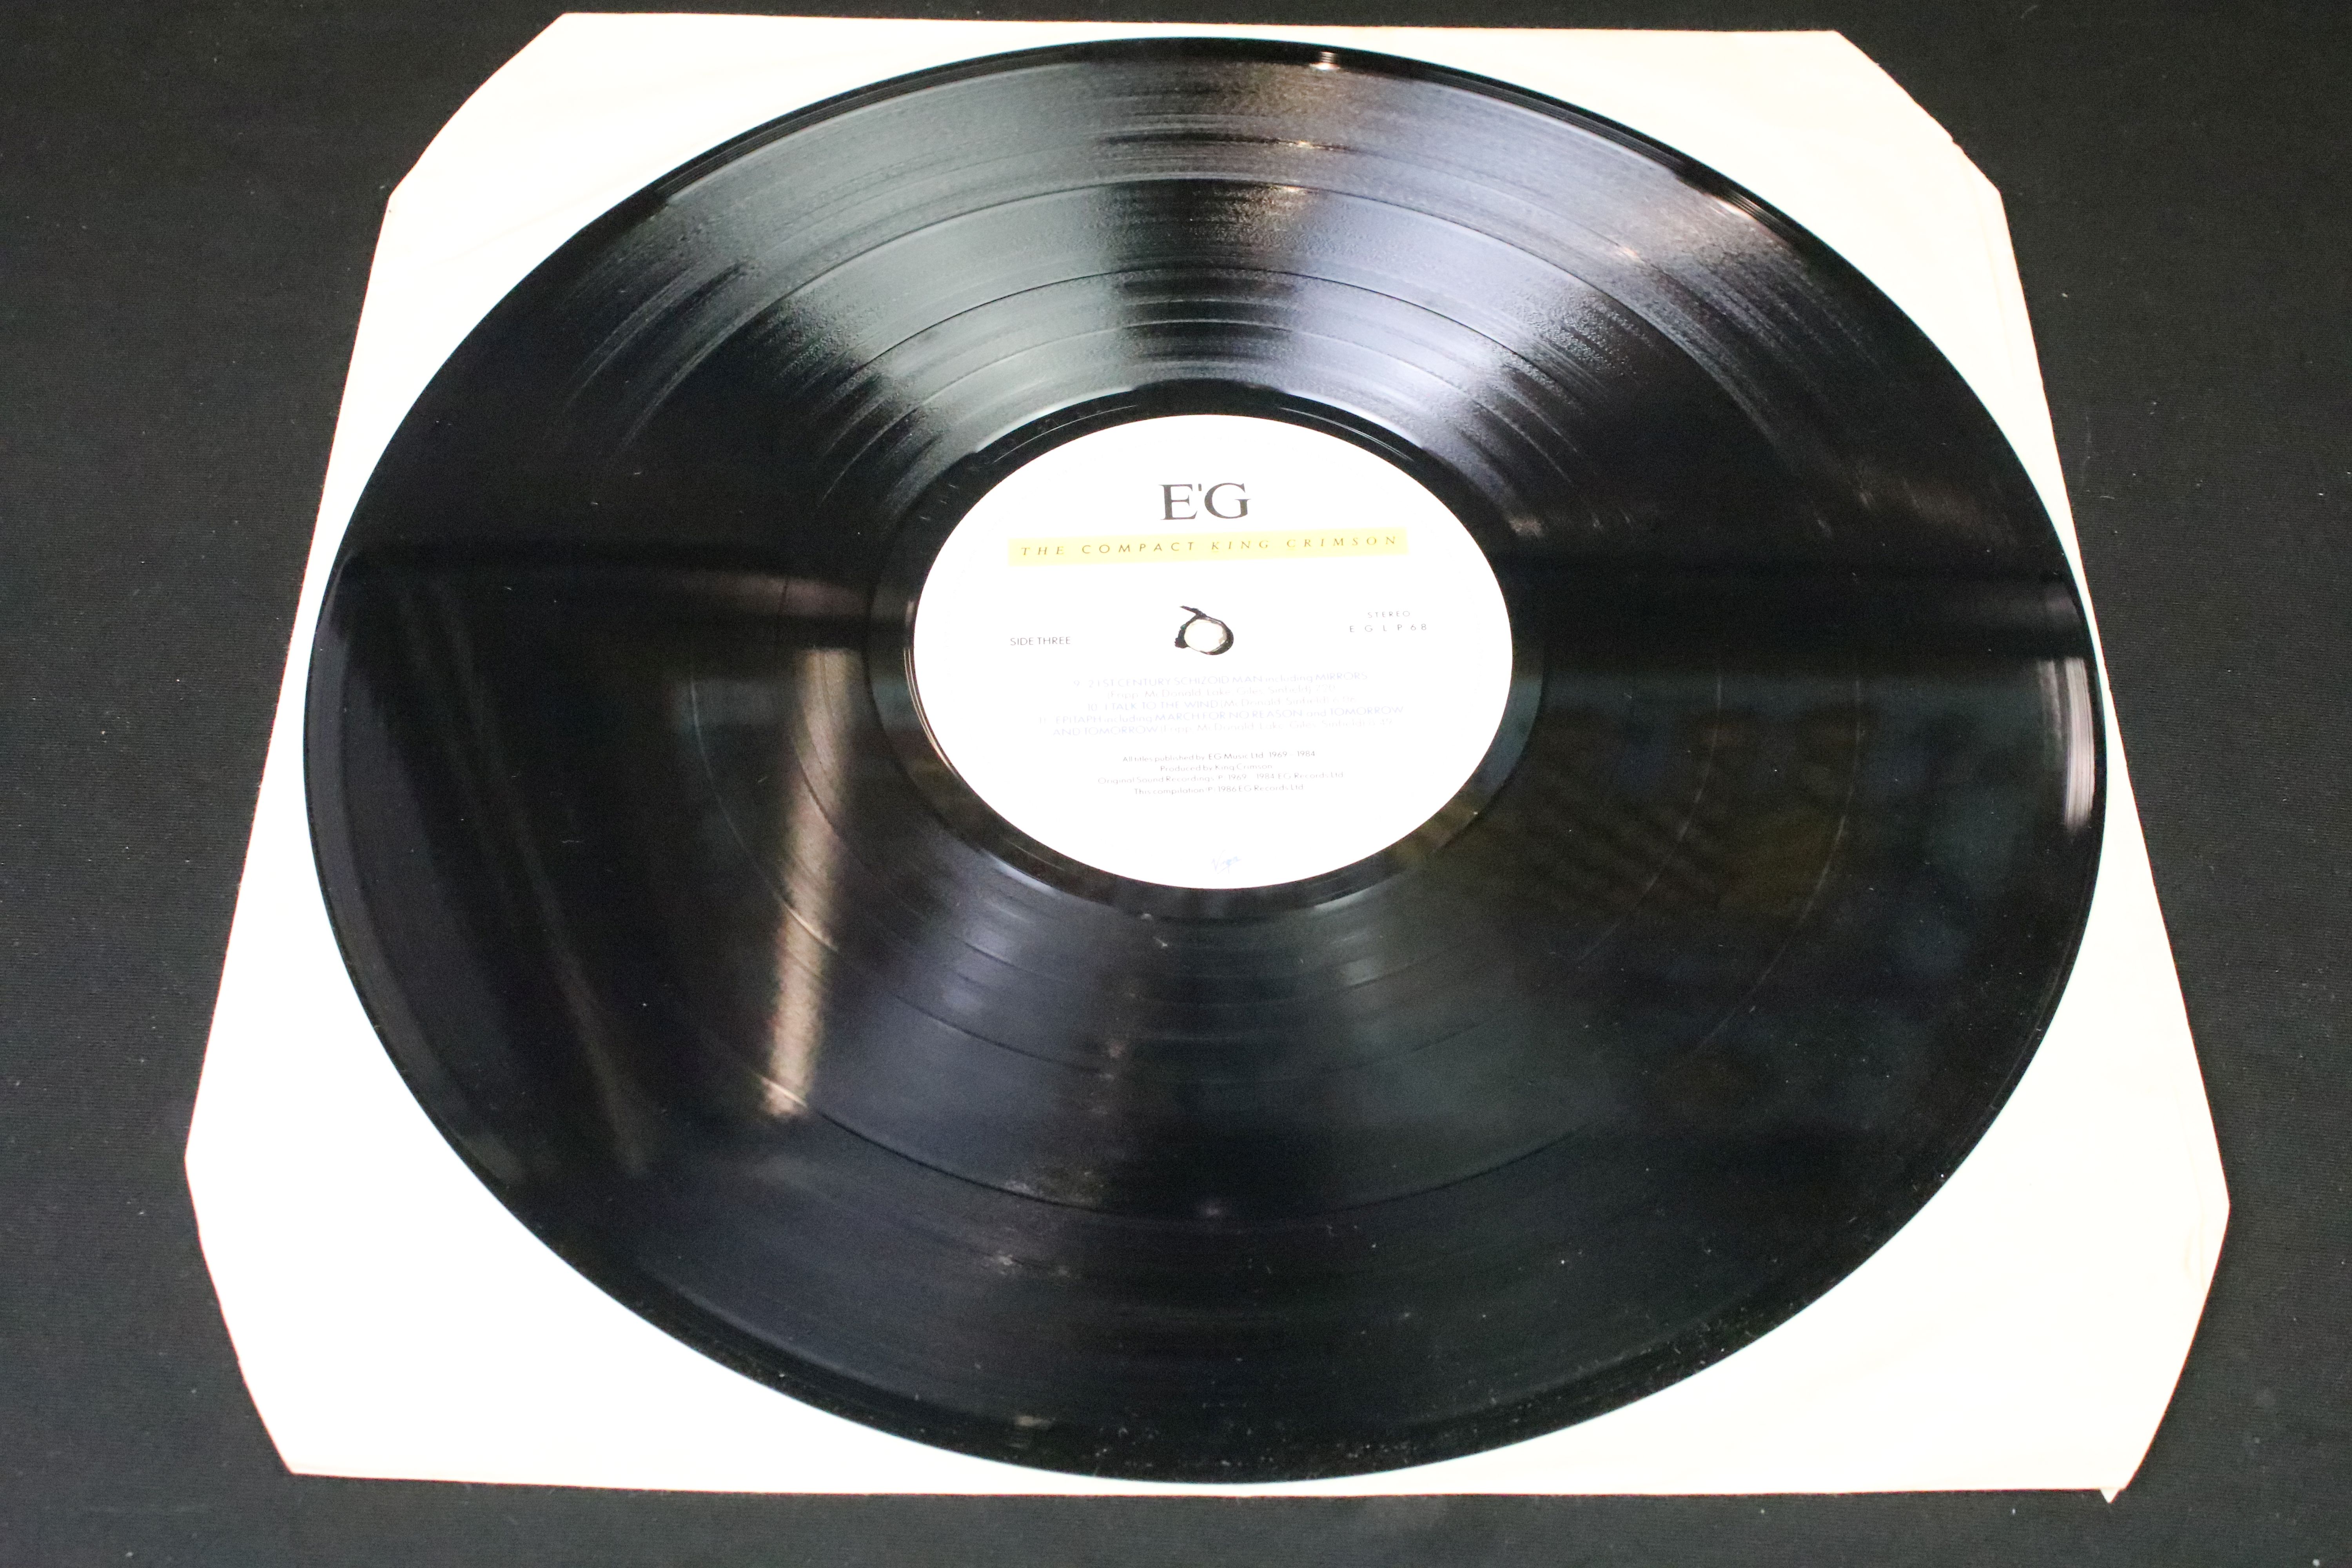 Vinyl / Autographs - King Crimson – The Compact King Crimson, original UK 1986 double album, EG - Image 10 of 14